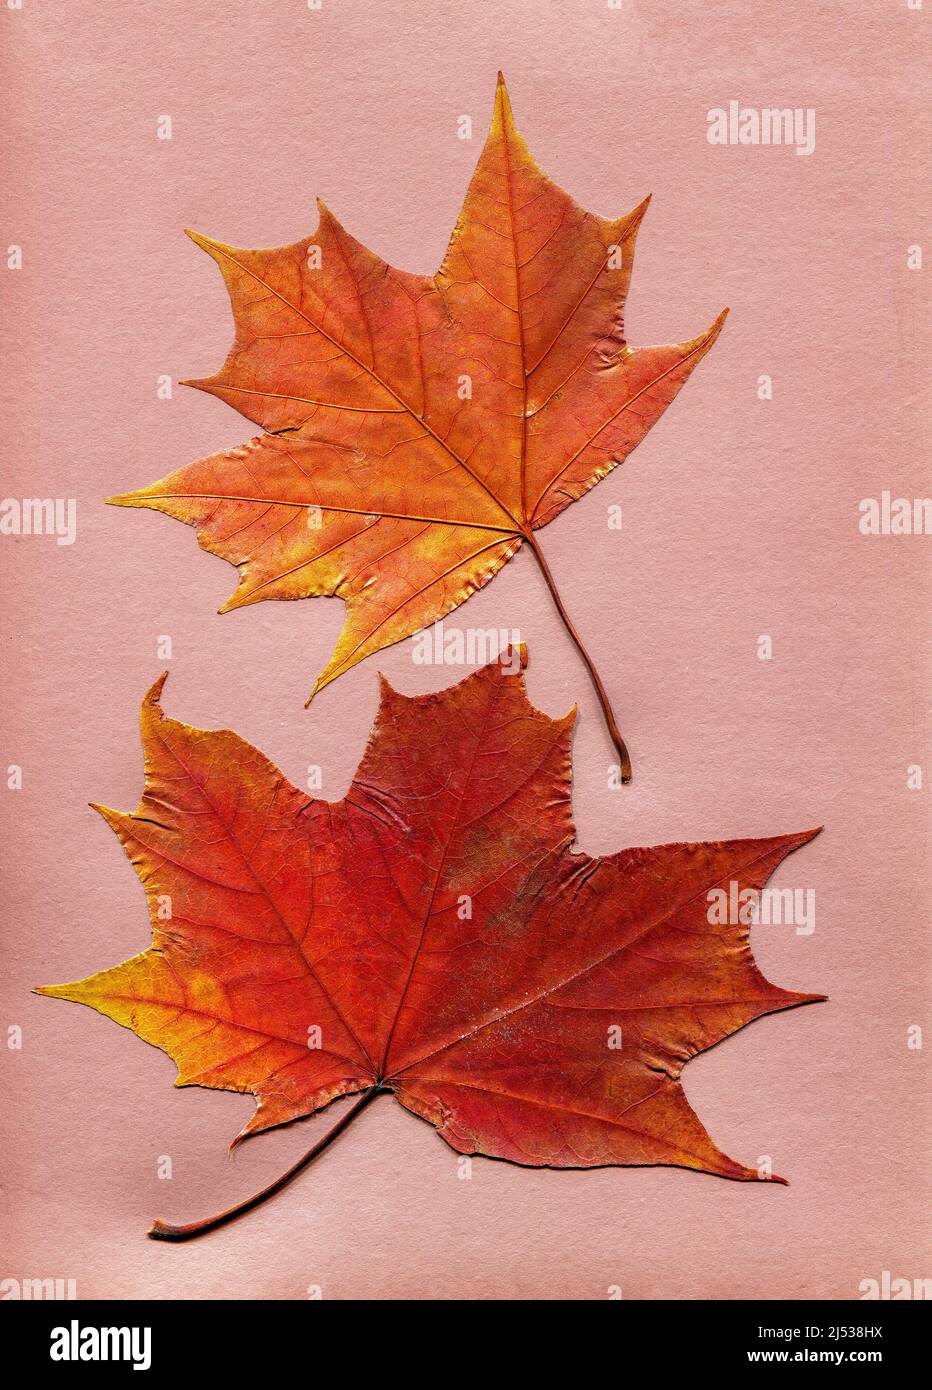 Set aus trocken gepressten Ahornblättern auf rosa Papier. Draufsicht, flach liegend. Herbstliches Herbarium, Botanik-Konzept Stockfoto